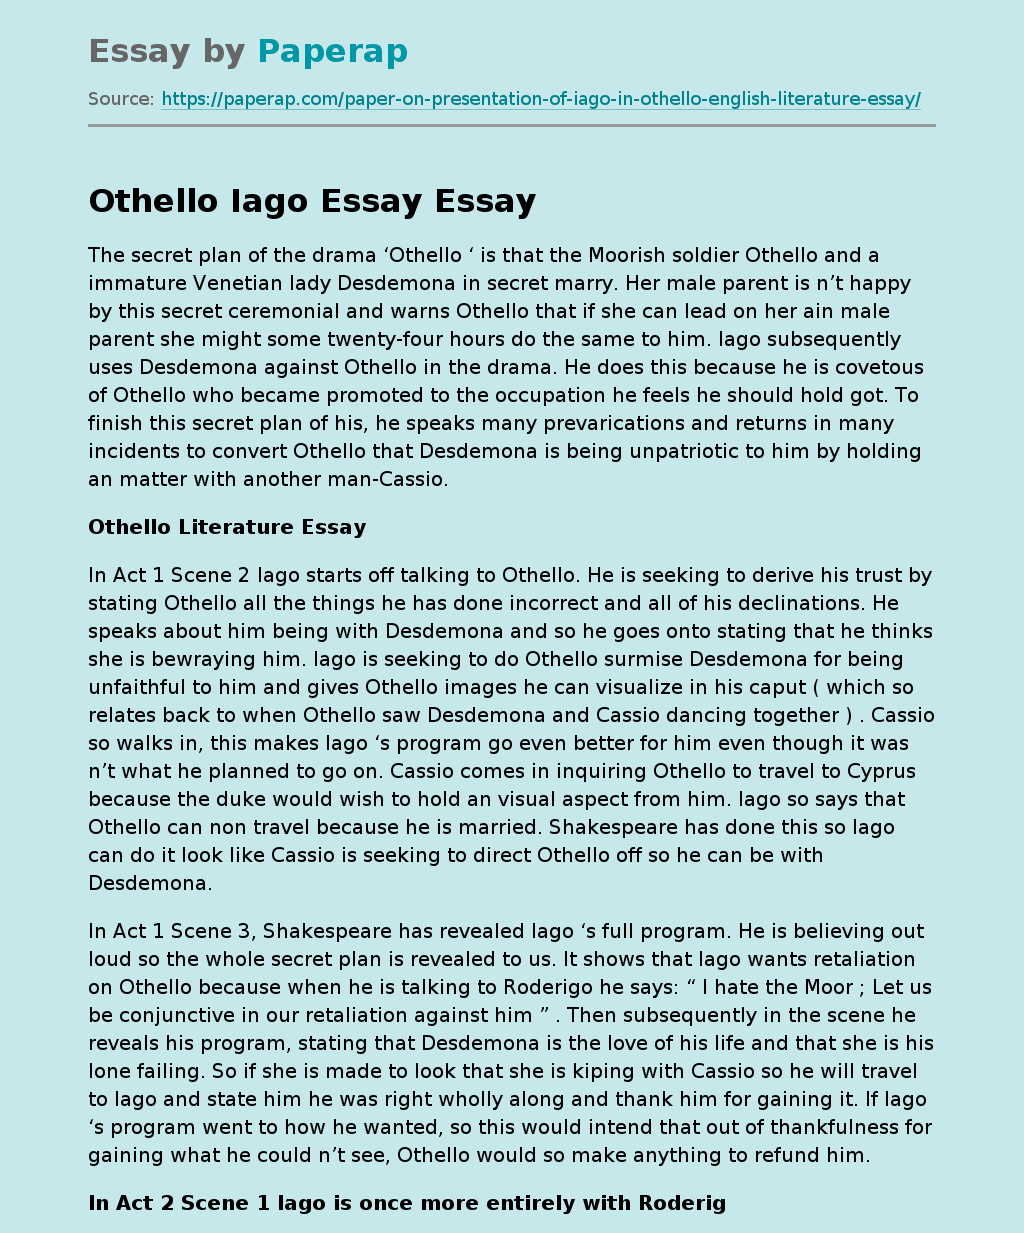 About Othello Iago